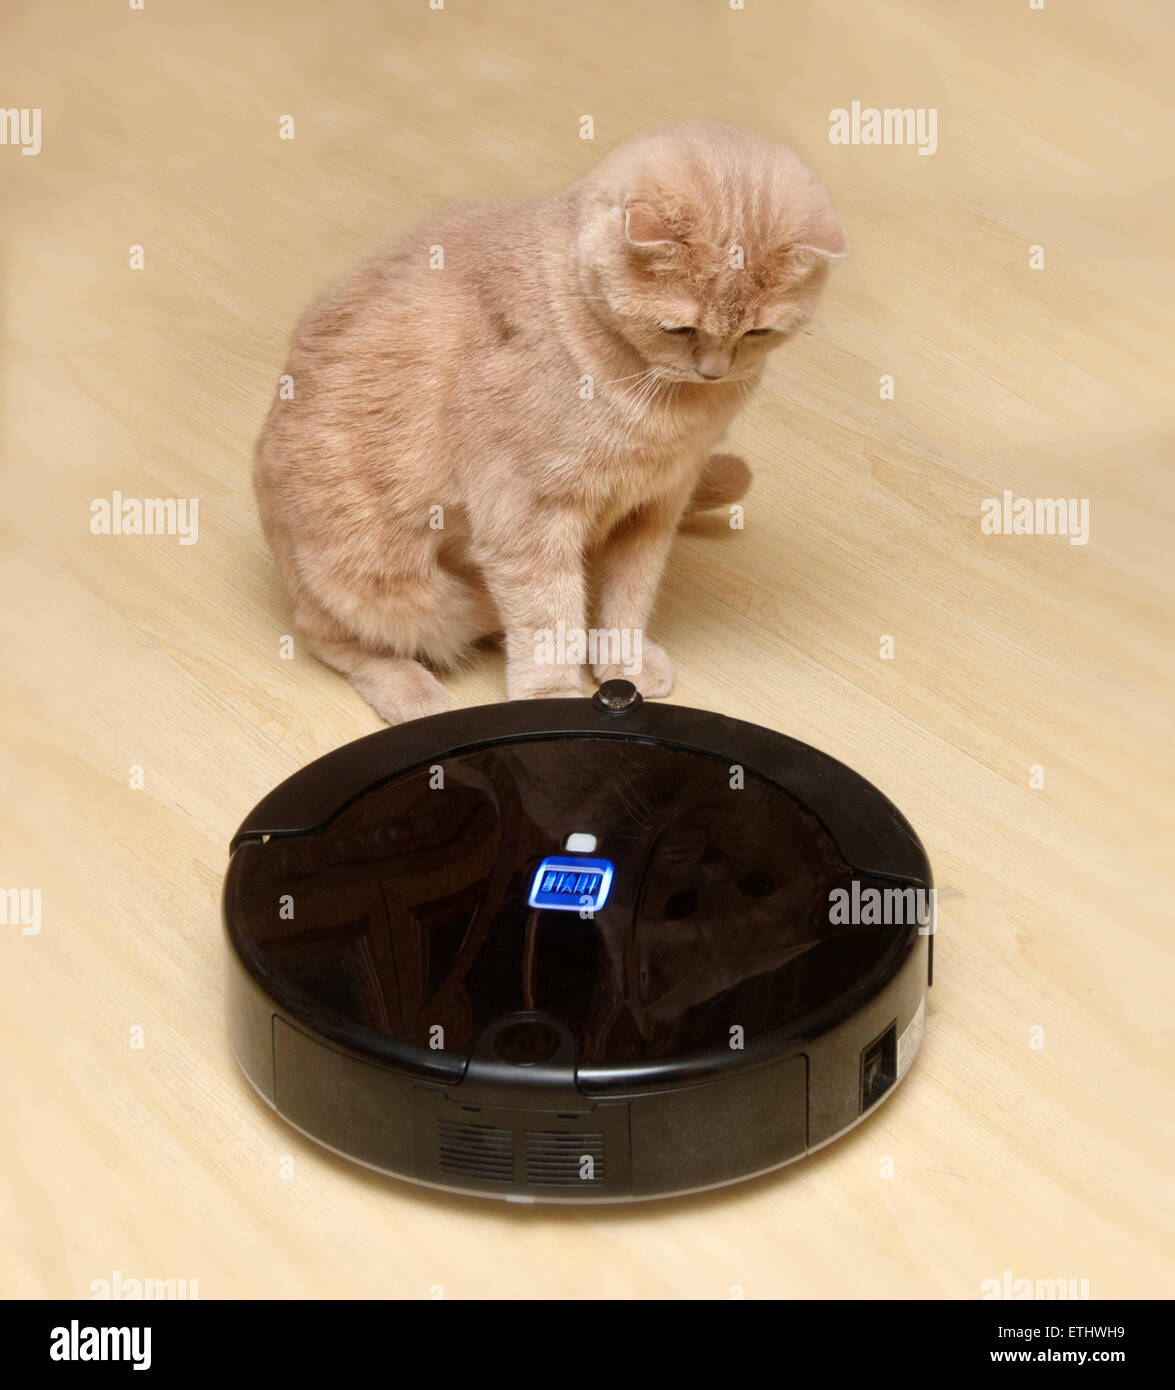 Aspirateur Robot sur le sol avec un chat surpris Photo Stock - Alamy